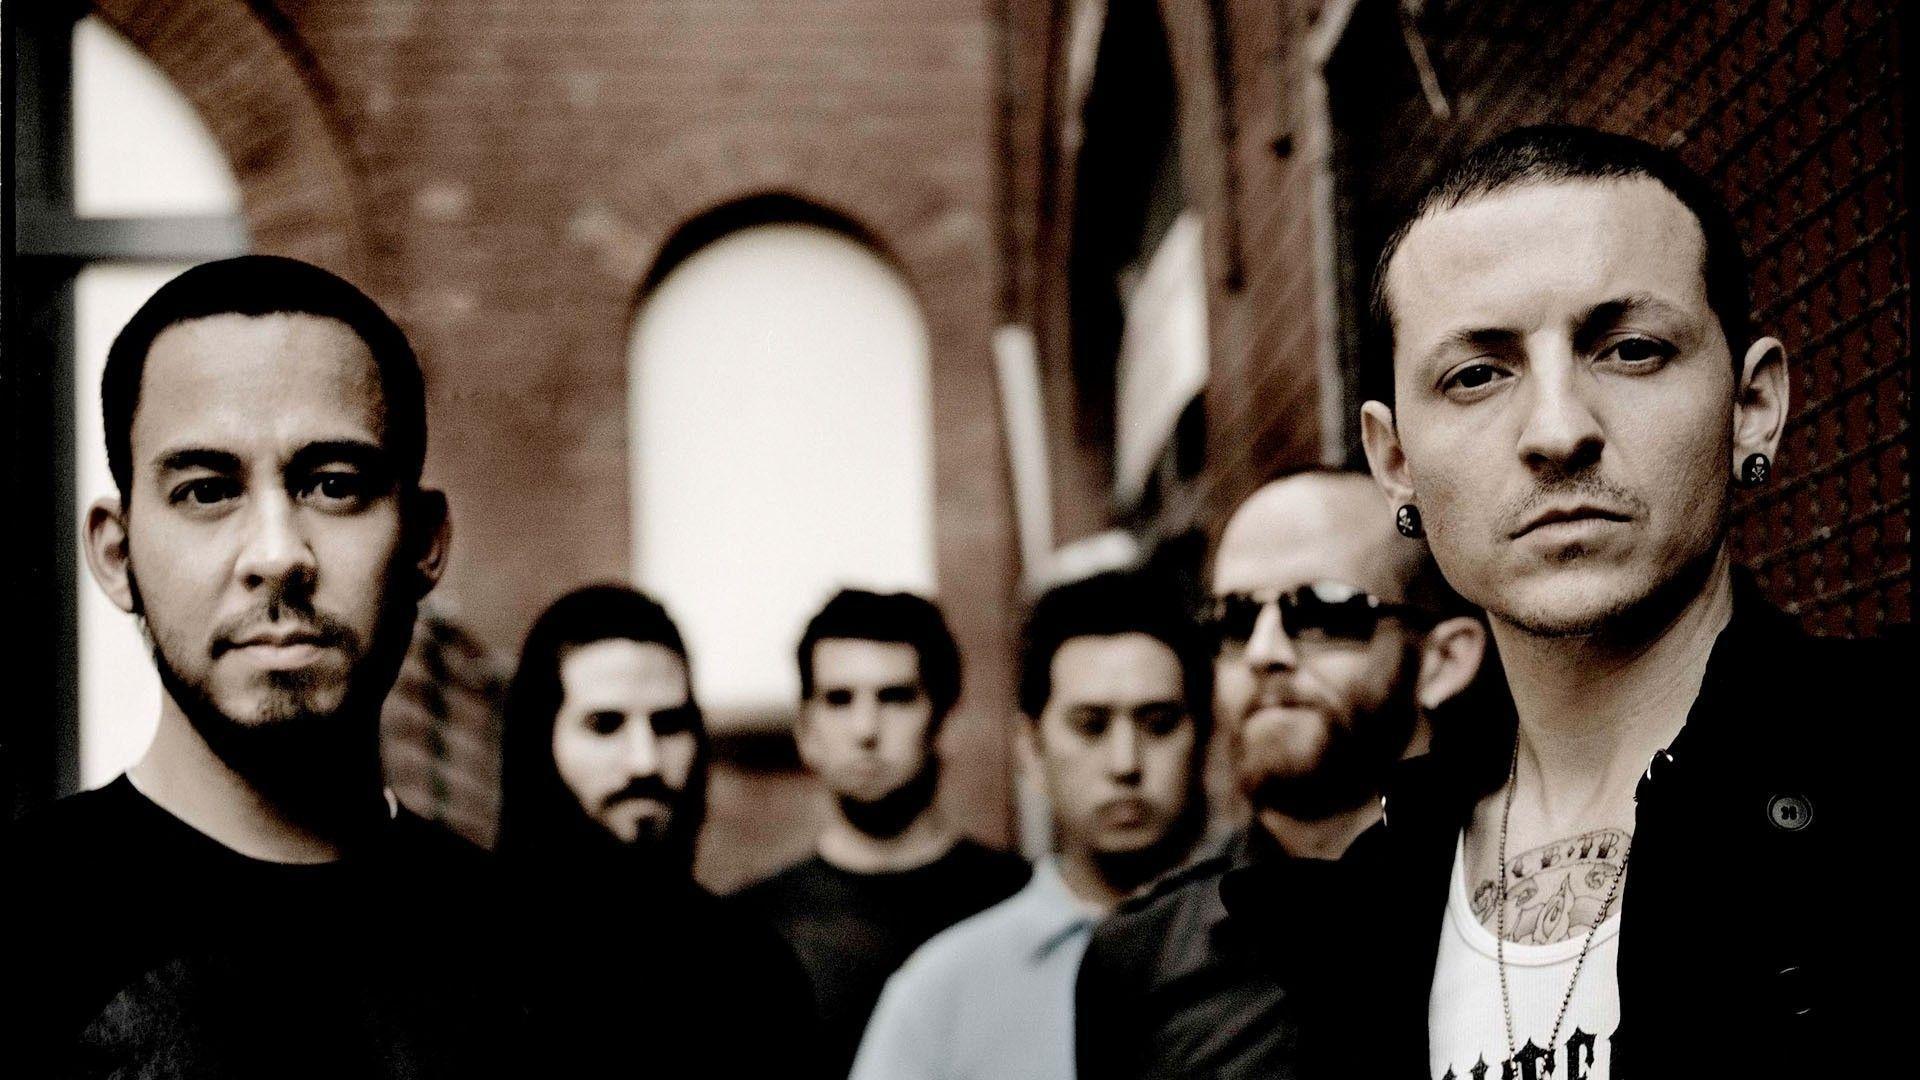 Linkin Park Background